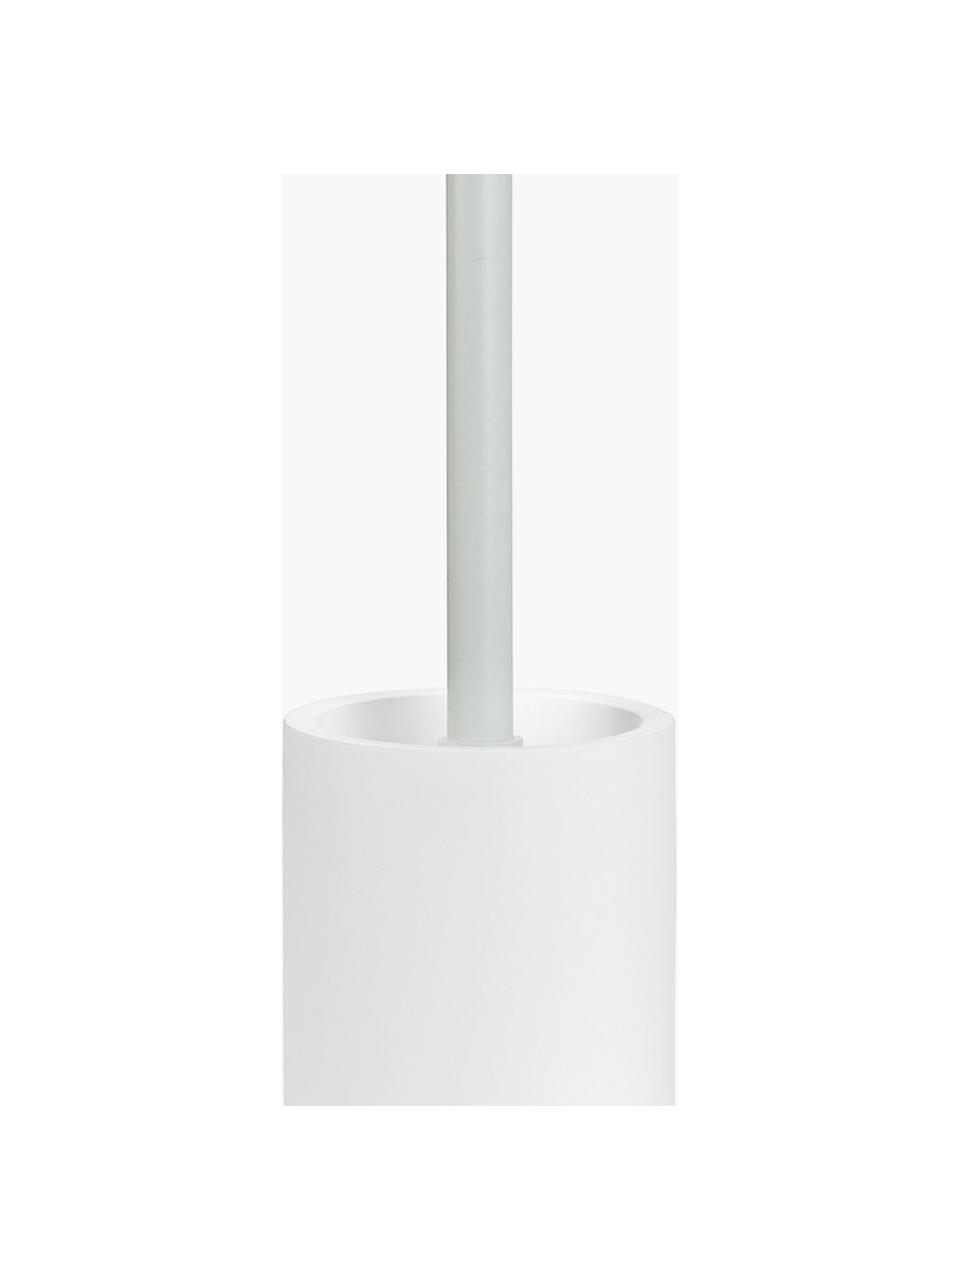 Toilettenbürste Archway, Behälter: Polyresin, Griff: Metall, Weiss, Ø 10 x H 41 cm